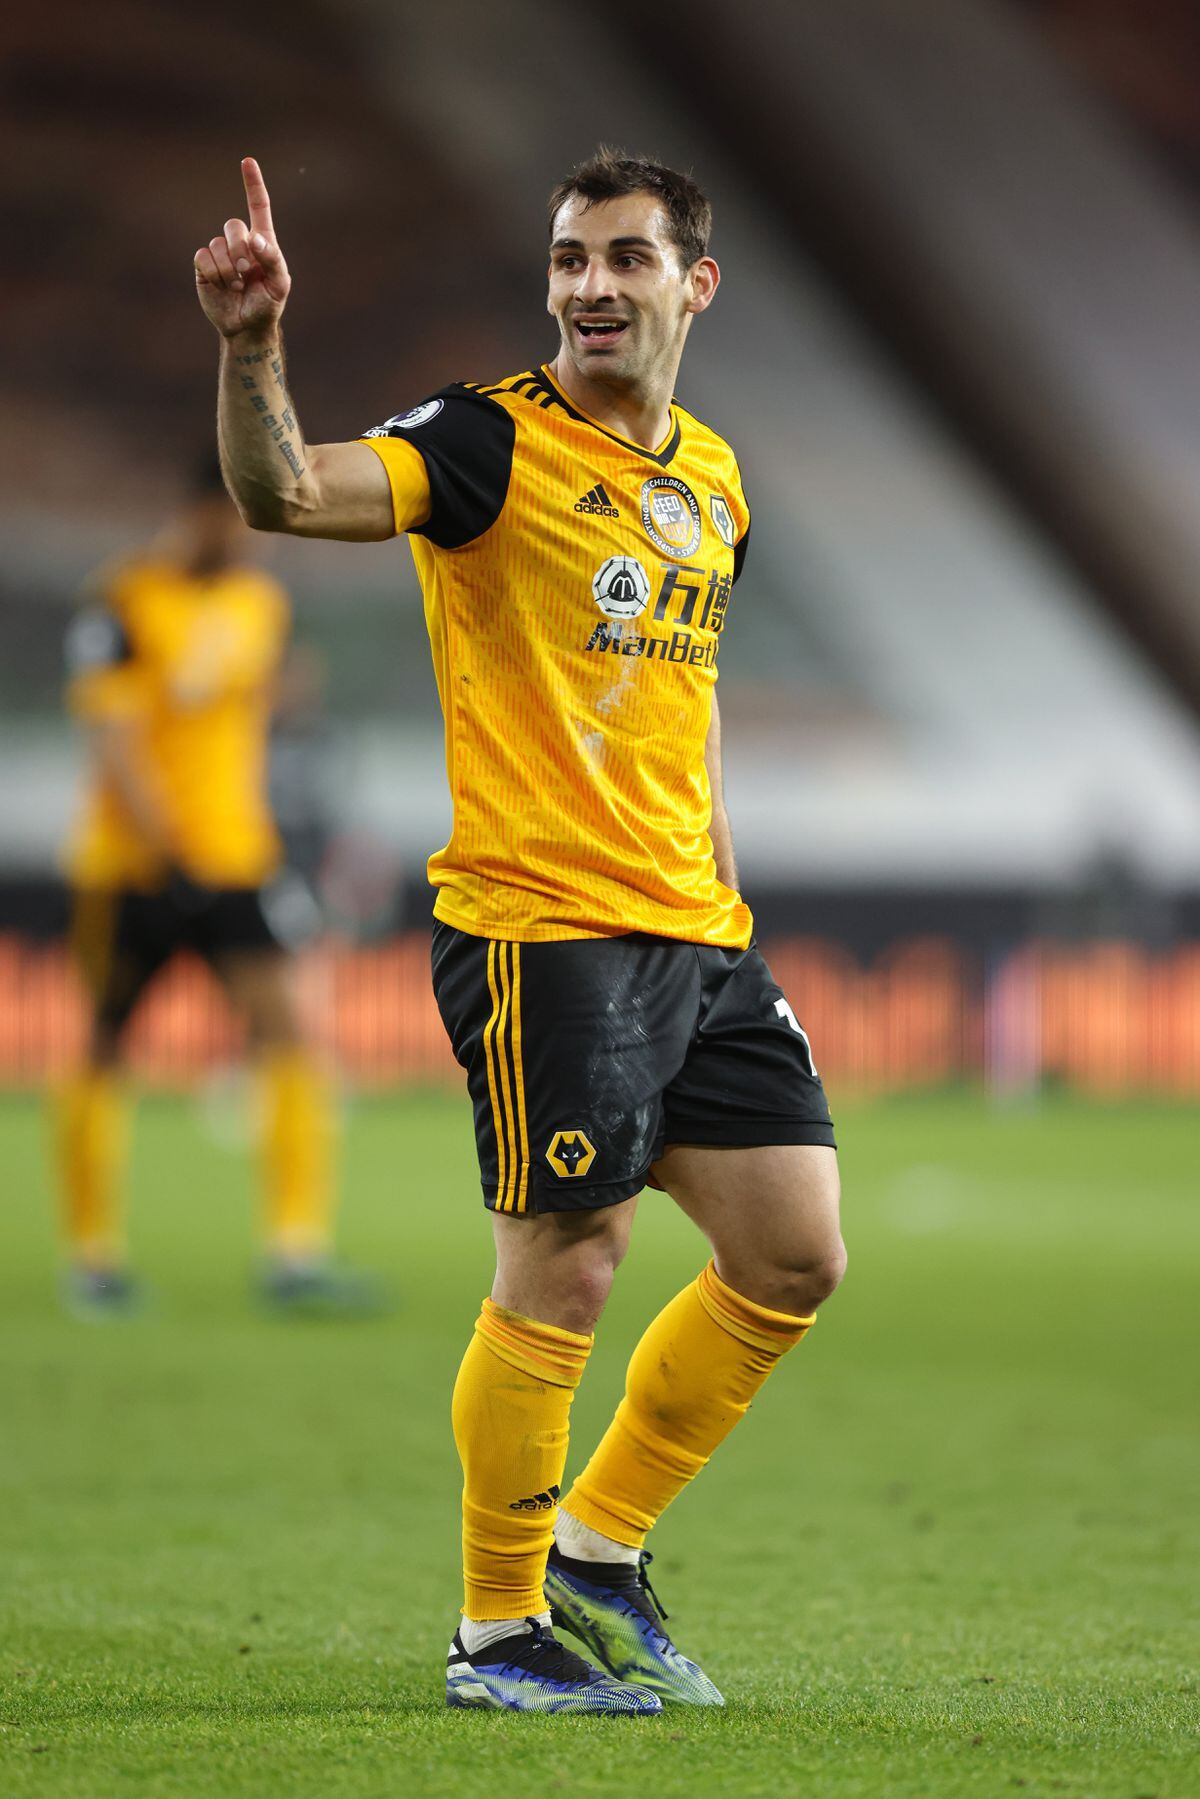 Jonny of Wolverhampton Wanderers. (AMA)